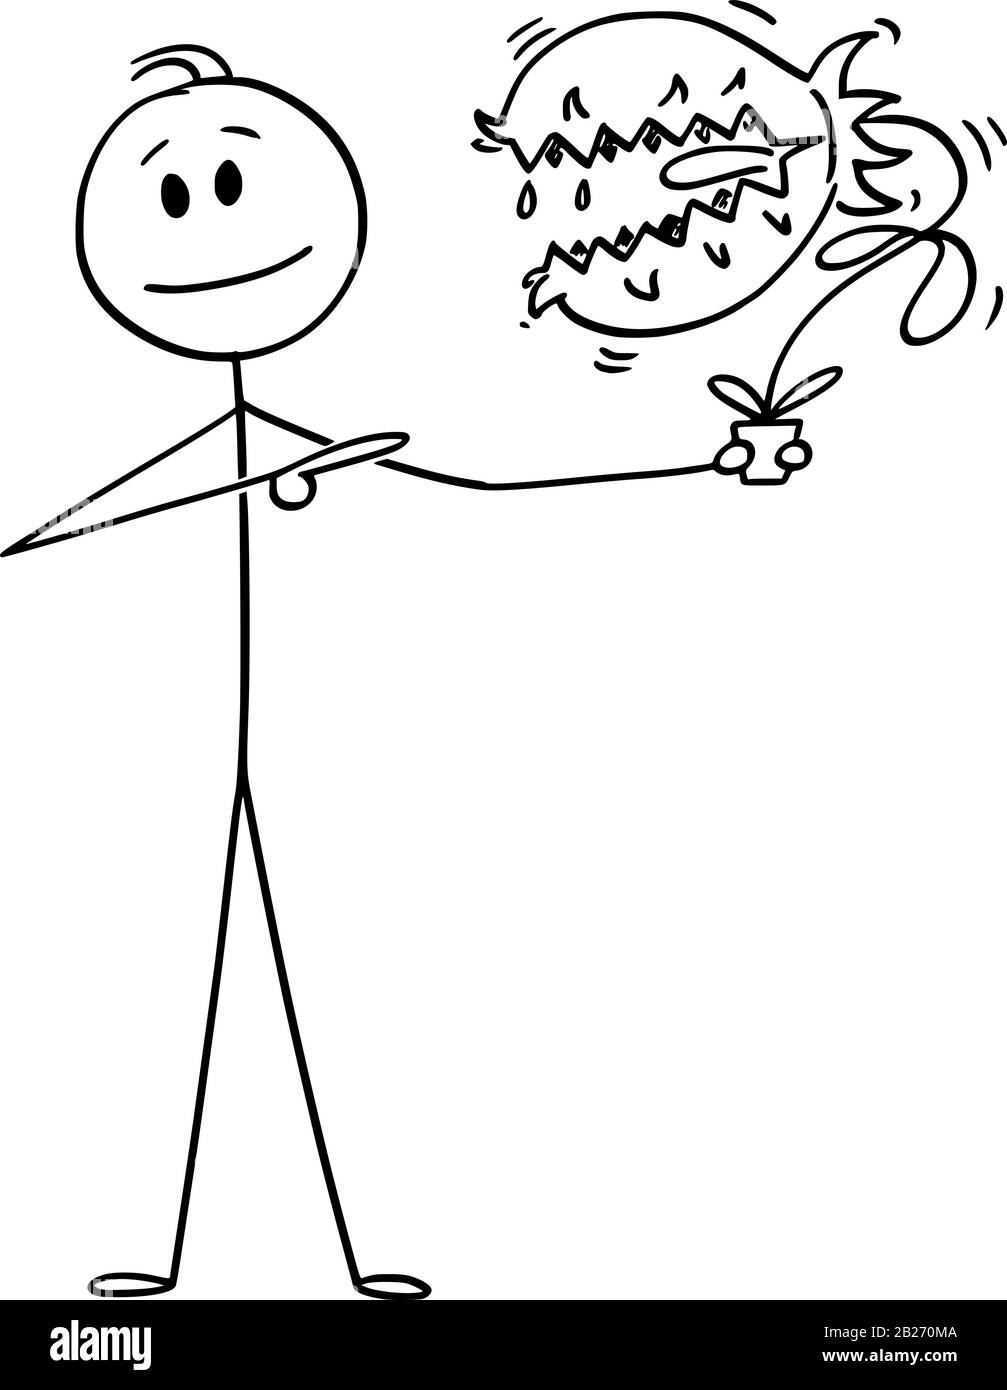 Vektor-Cartoon-Stick-Abbildung konzeptionelle Abbildung des Menschen, der gefährliche fleischfressende Pflanzen mit Mund und Zähnen im Blumentopf hält. Stock Vektor